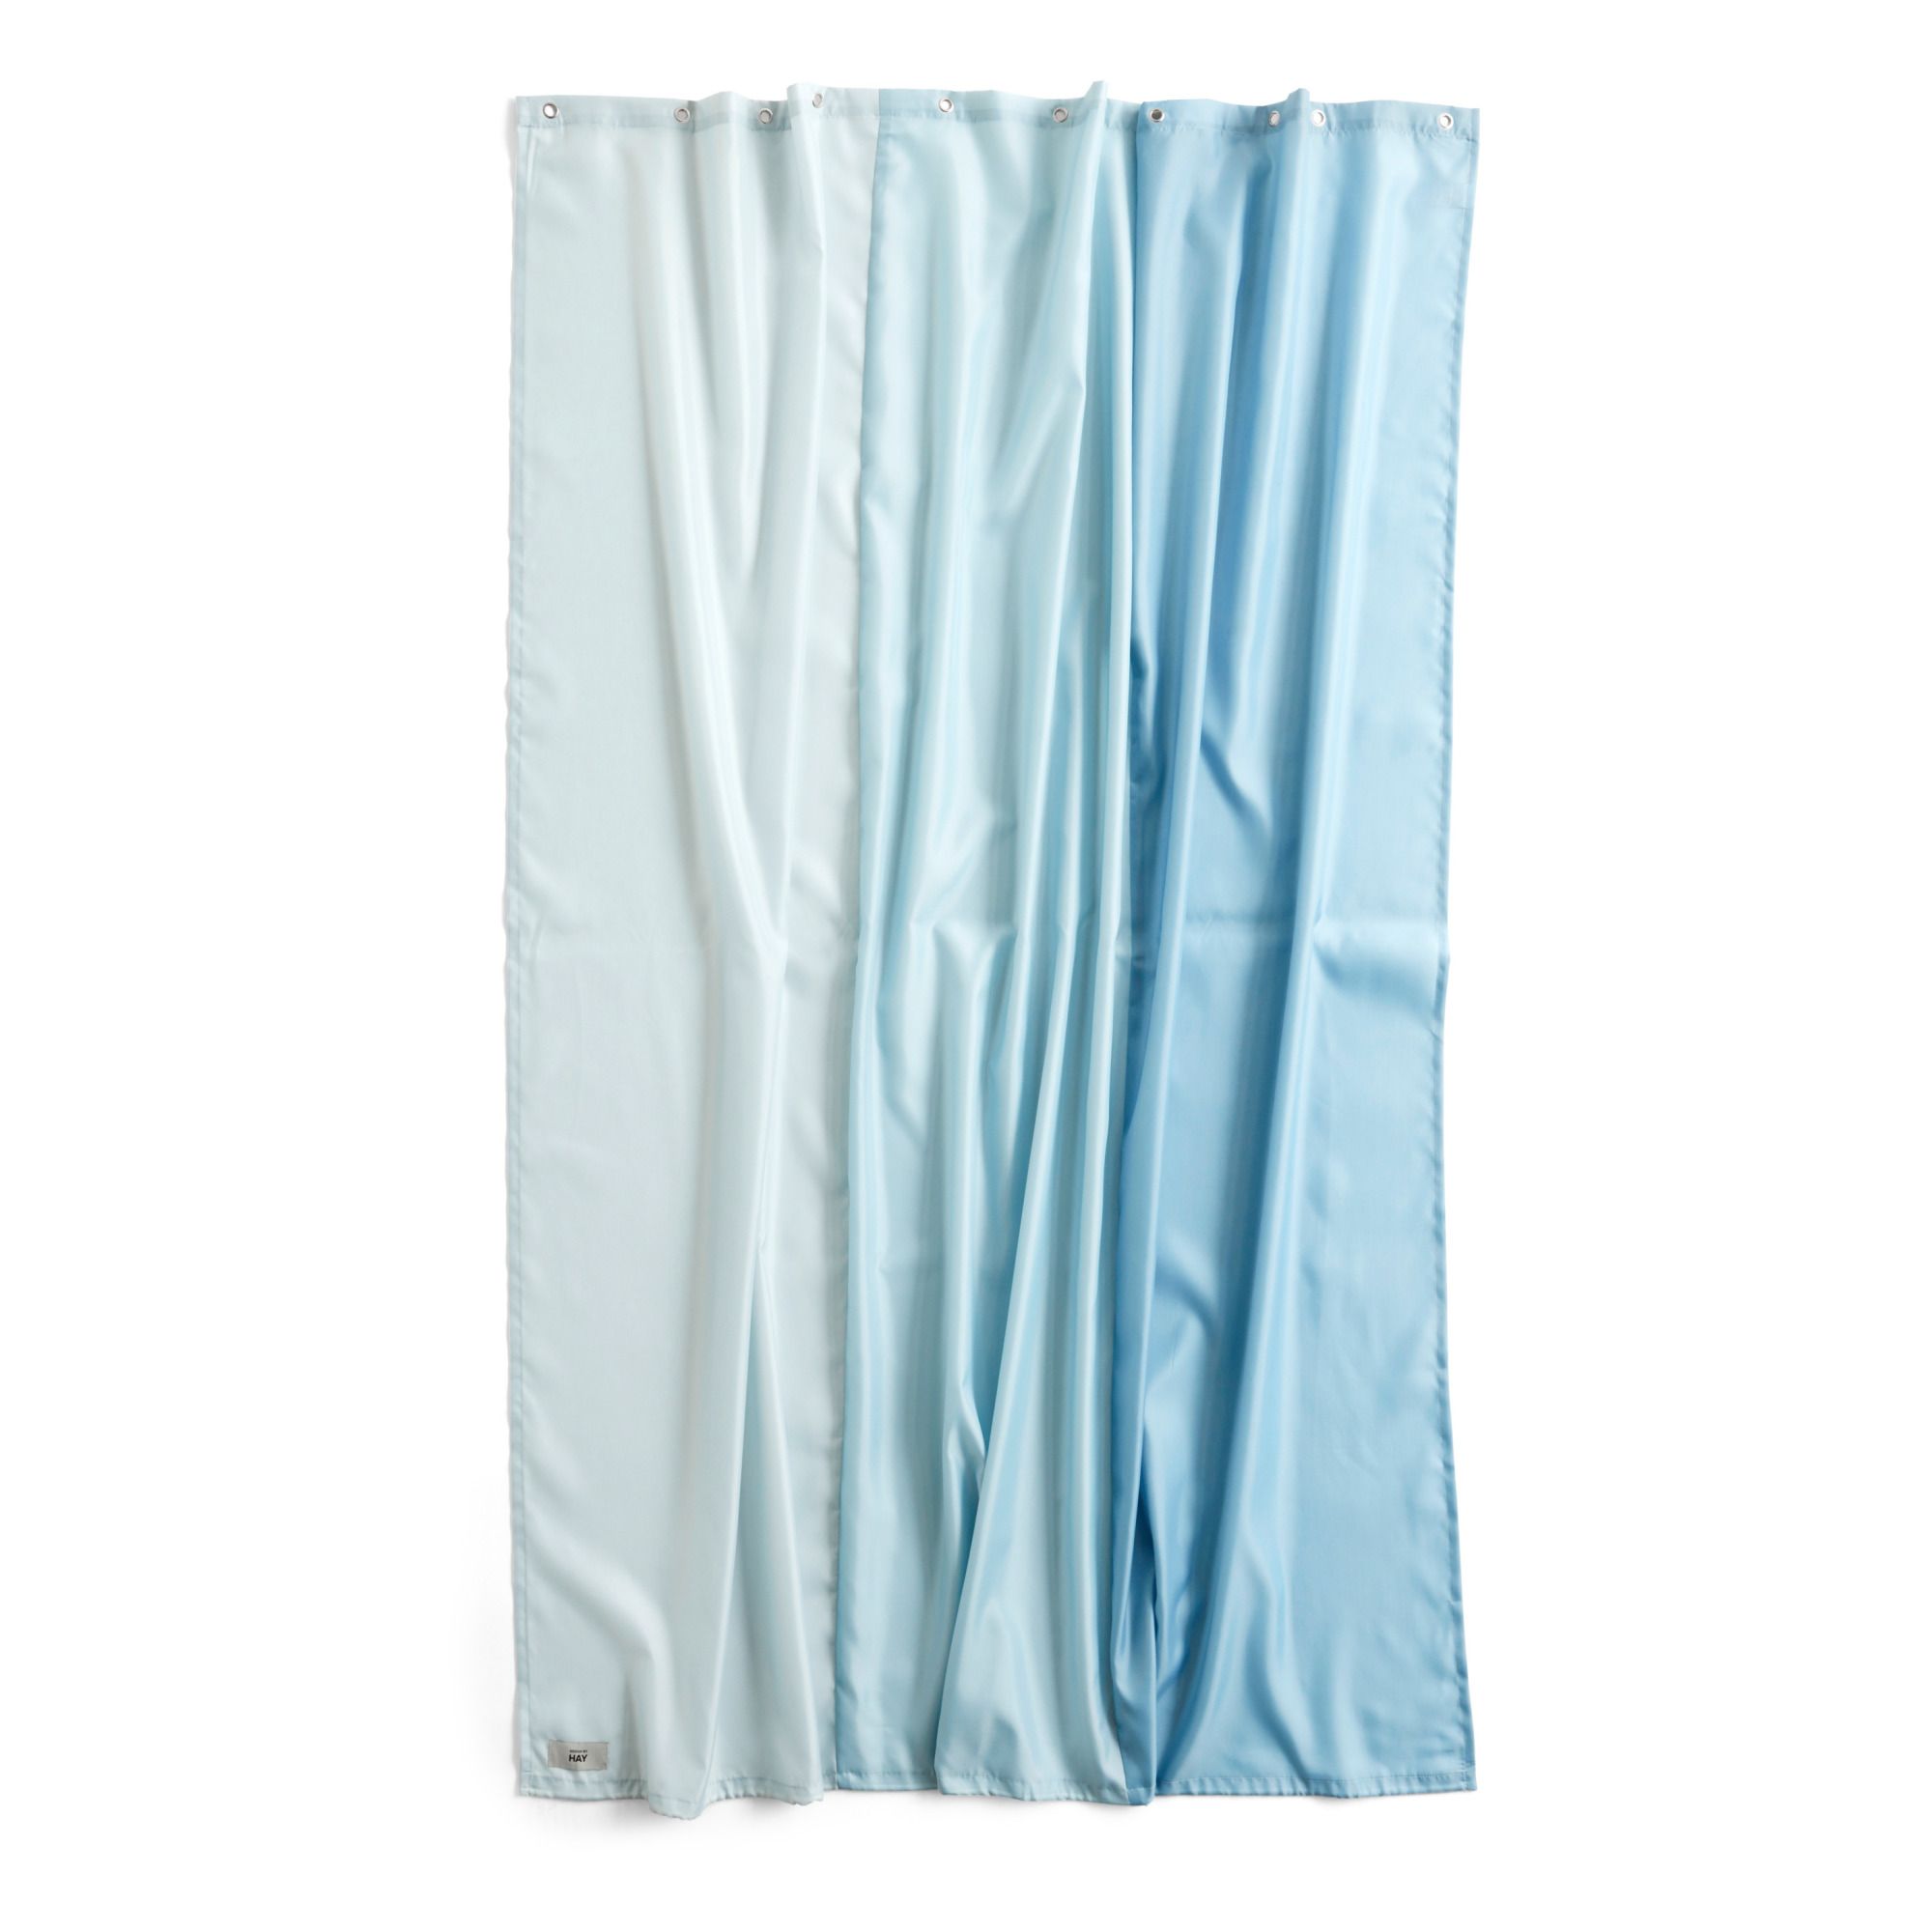 Hay - Rideaux de douche Aquarelle - 180x200 cm - Bleu pâle